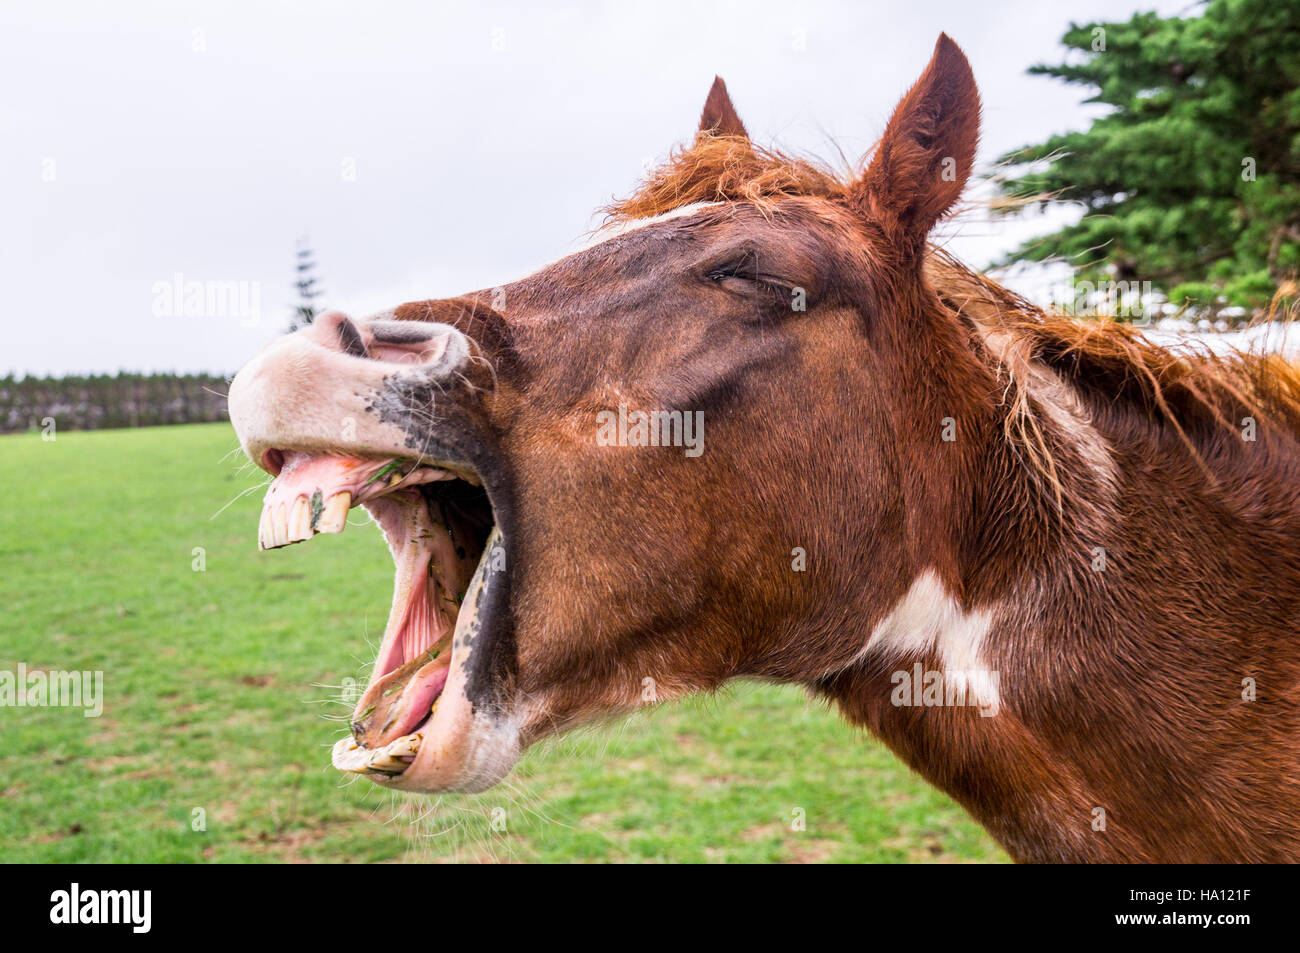 Funny yawning horse portrait Stock Photo